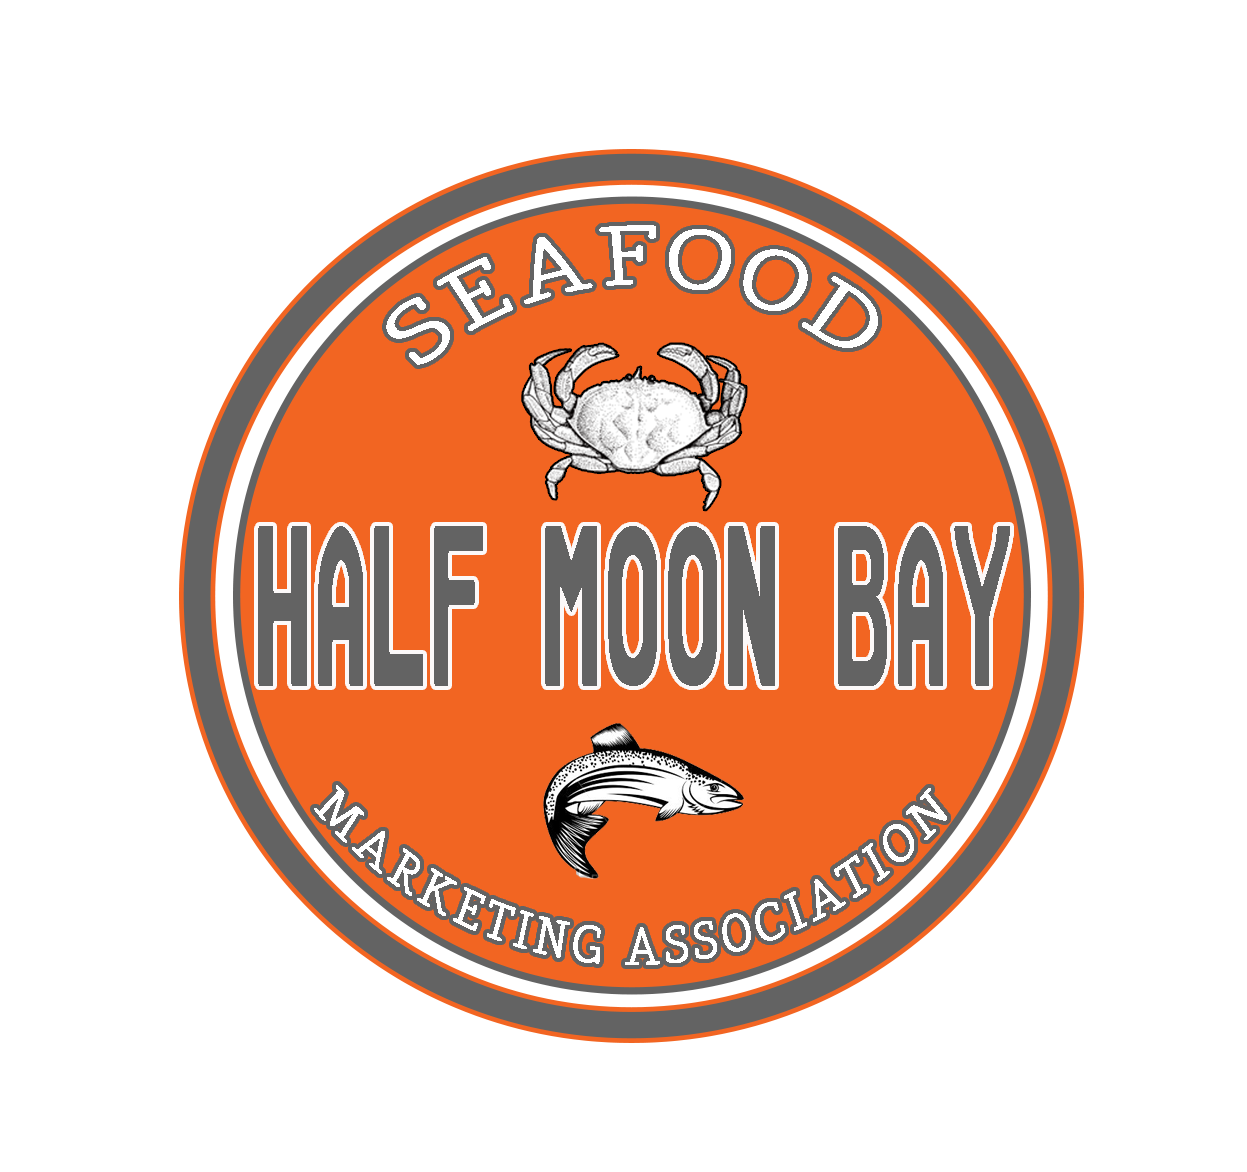 Half Moon Bay Seafood